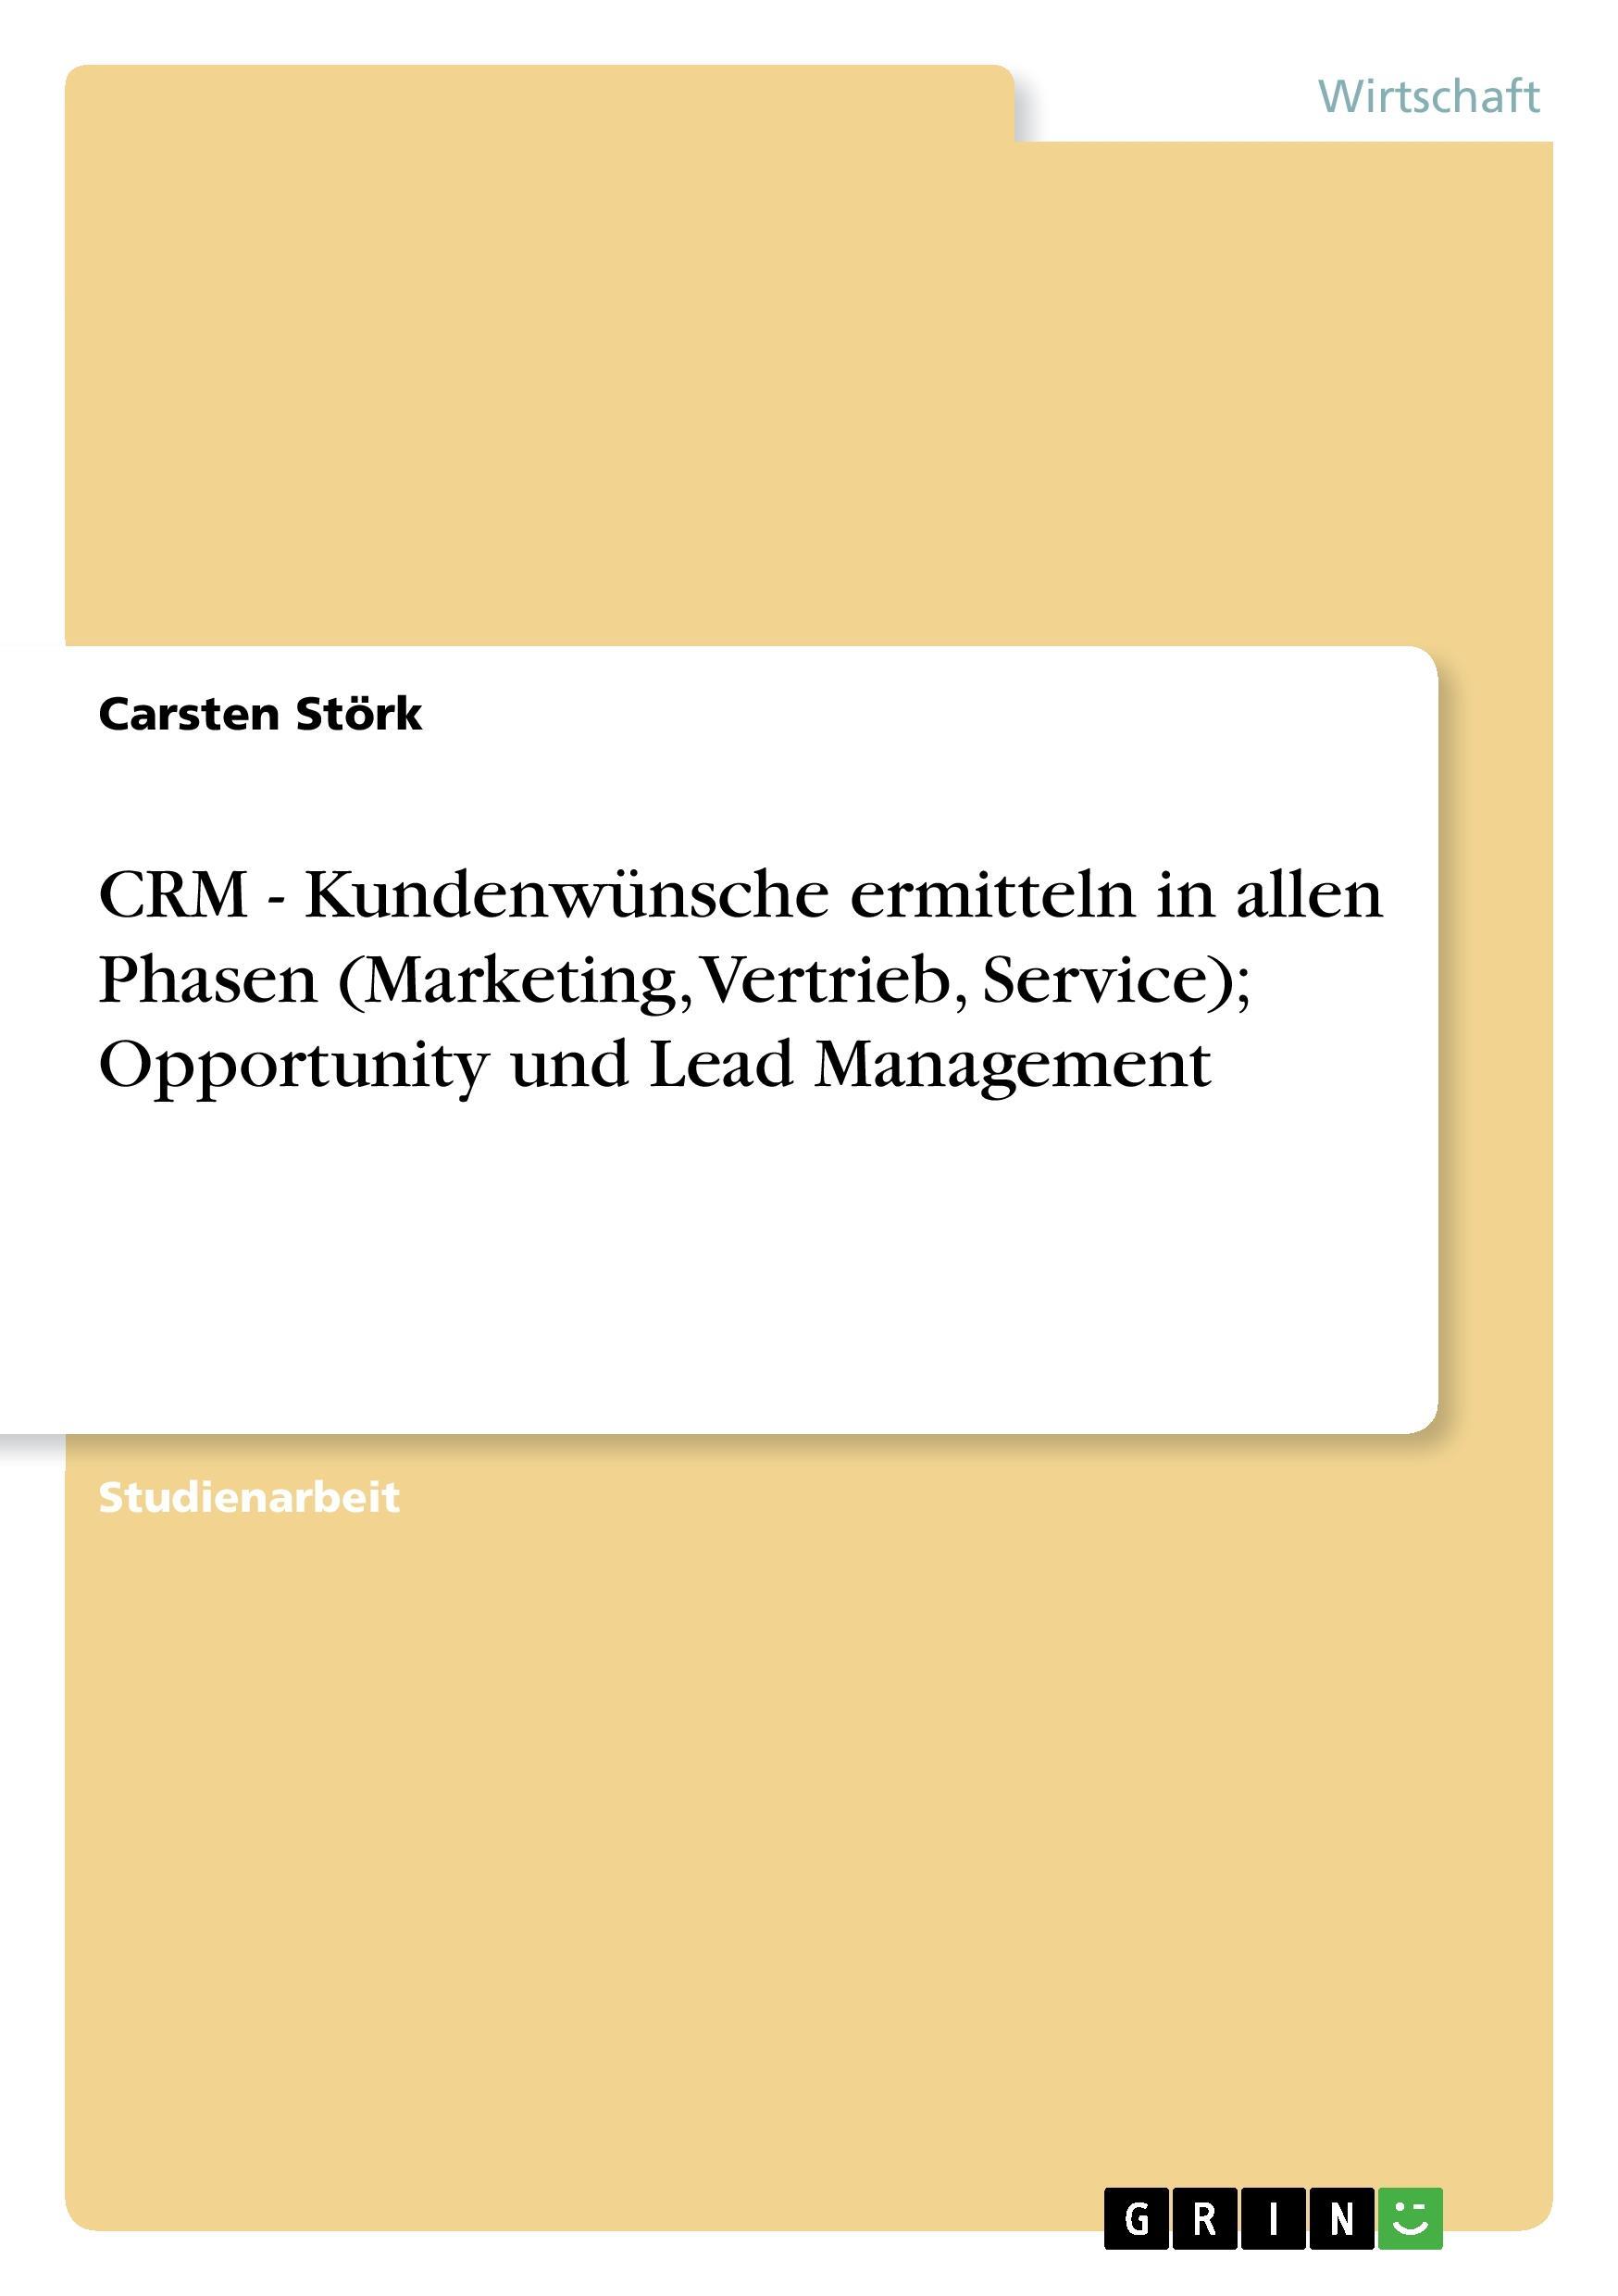 CRM - Kundenwuensche ermitteln in allen Phasen (Marketing, Vertrieb, Service) Opportunity und Lead Management - Stoerk, Carsten